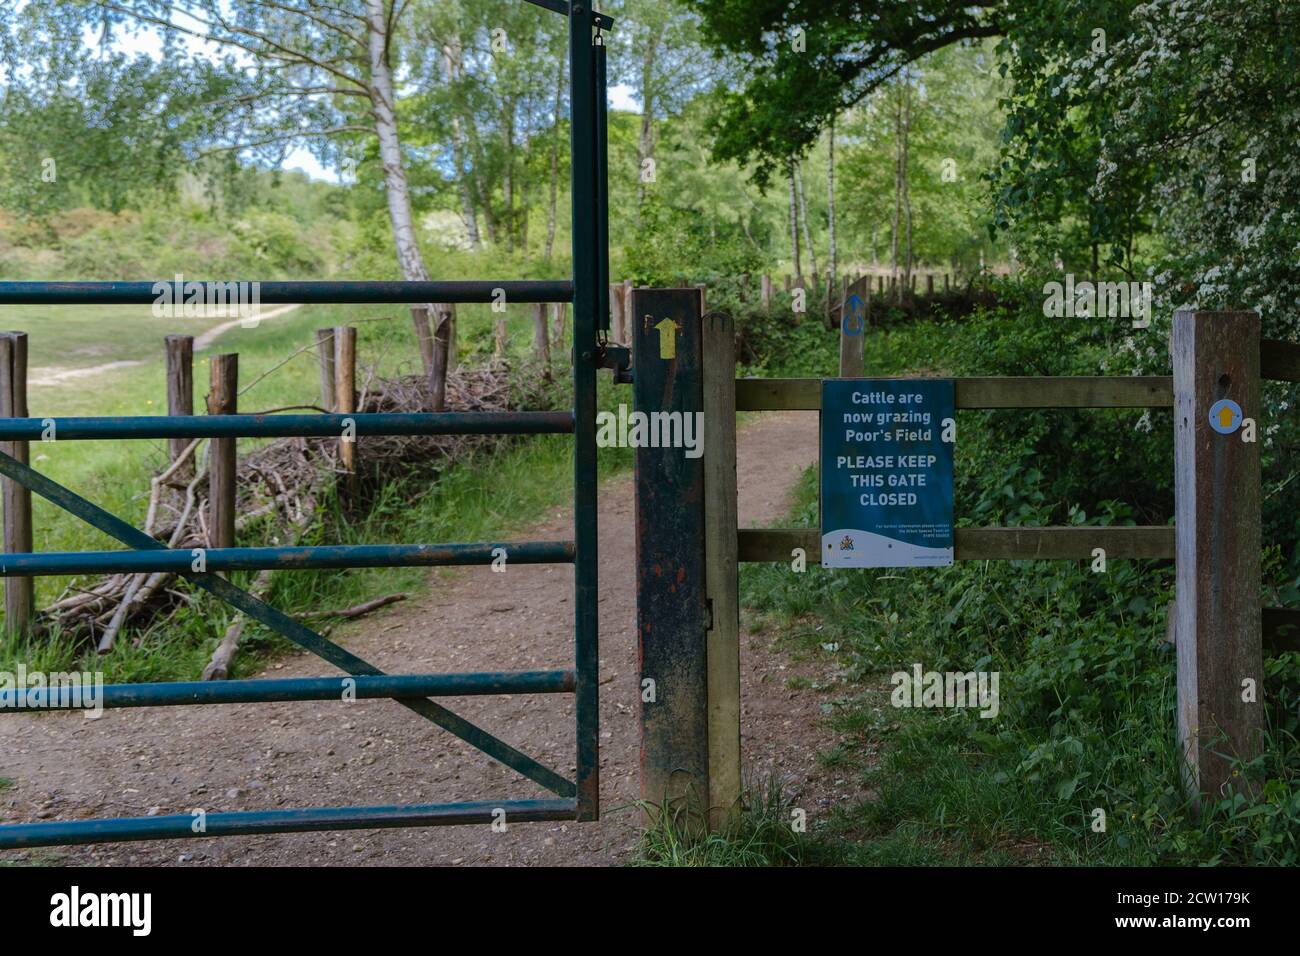 Sign on Fence von Hillingdon Green Spaces Team über Rinder Weiden & Tor geschlossen zu halten. Ruislip Woods Nature Preserve. Stockfoto